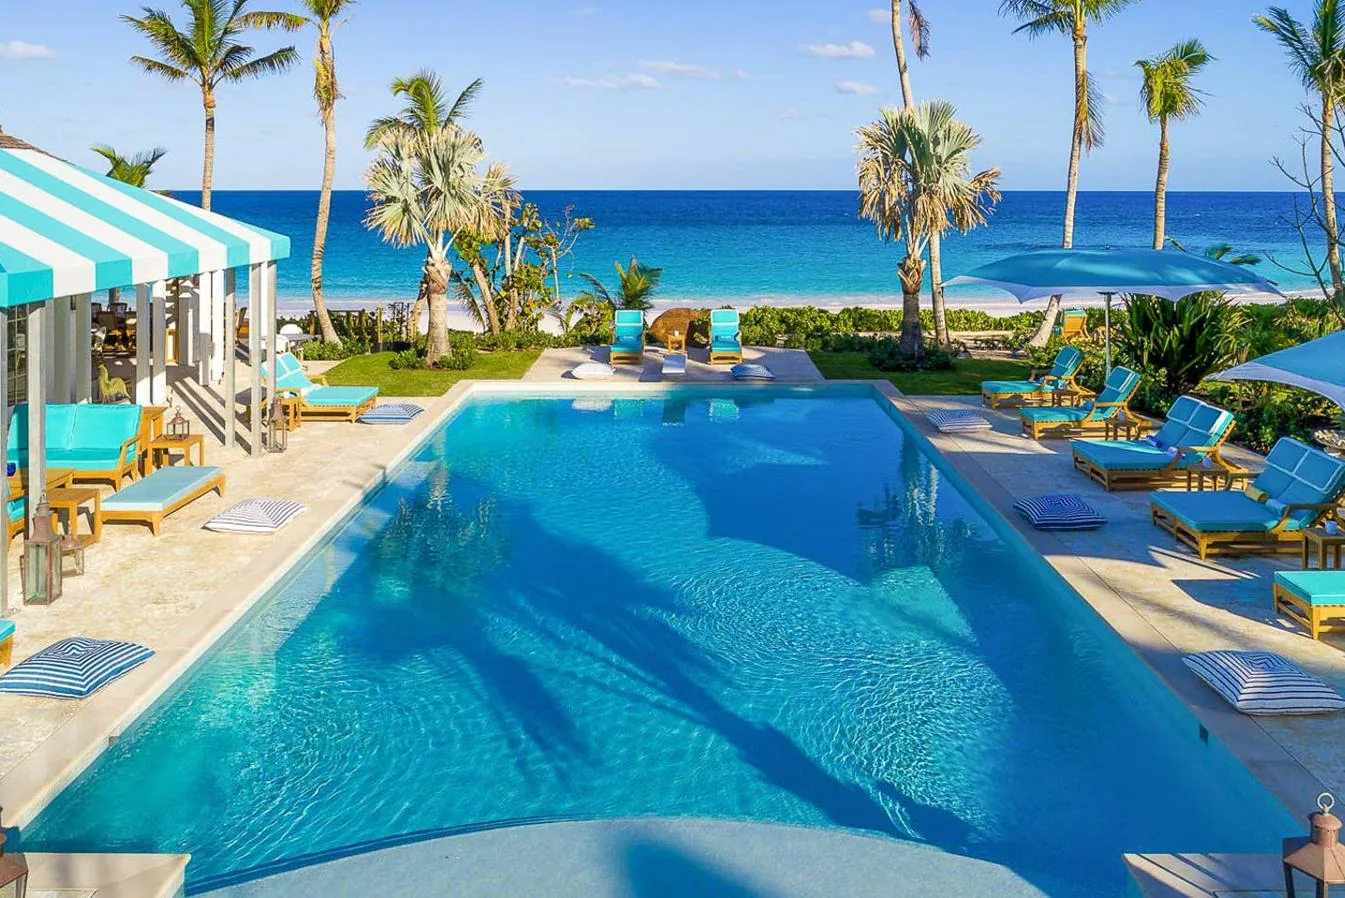 Piscina, bar y cenador- La lujosa mansión de Kylie Jenner en Bahamas. La amplia piscina se comunica con la playa privada y está rodeada de gran cantidad de tumbonas y un chiringuito. Como se aprecia, no falta ningún detalle en esta villa cuyo precio ronda los 9.500€ la noche.